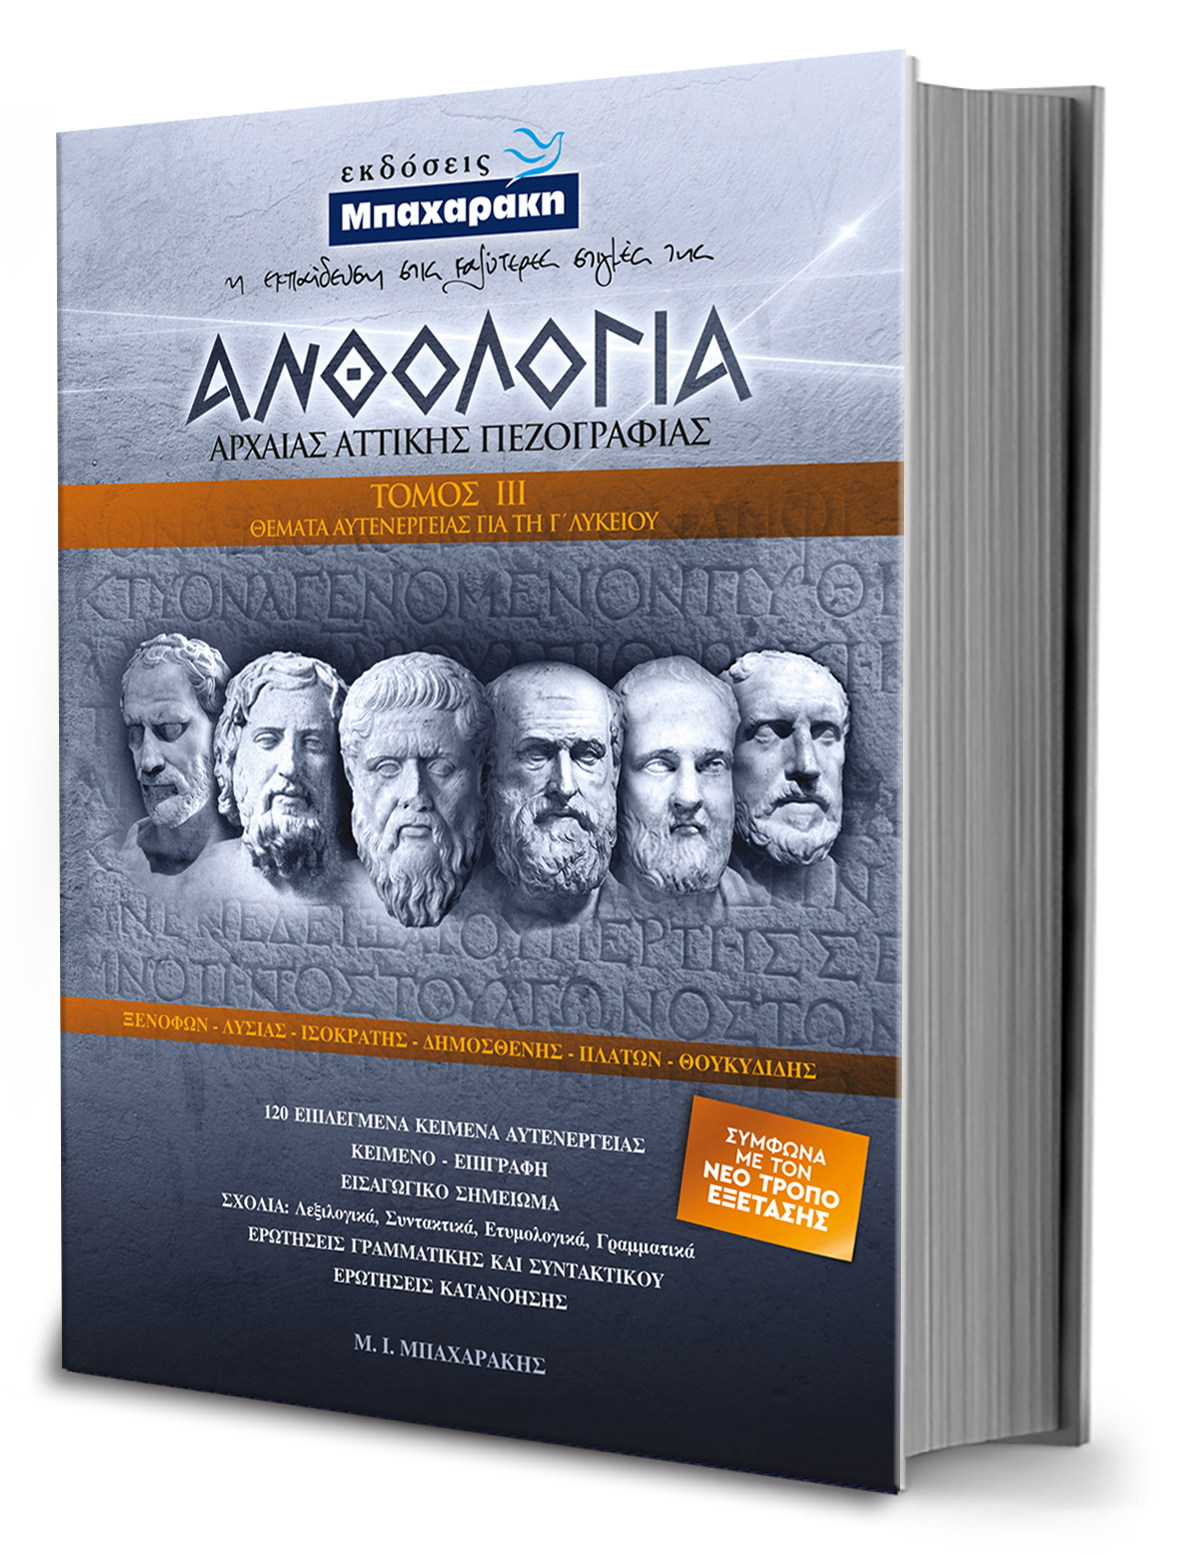 Εκδόσεις Μπαχαράκη: Βίβλίο με τίτλο: ΑΝΘΟΛΟΓΙΑ Αρχαία Αττικής Πεζογραφίας Θέματα Αυτενέργειας 3ος τόμος